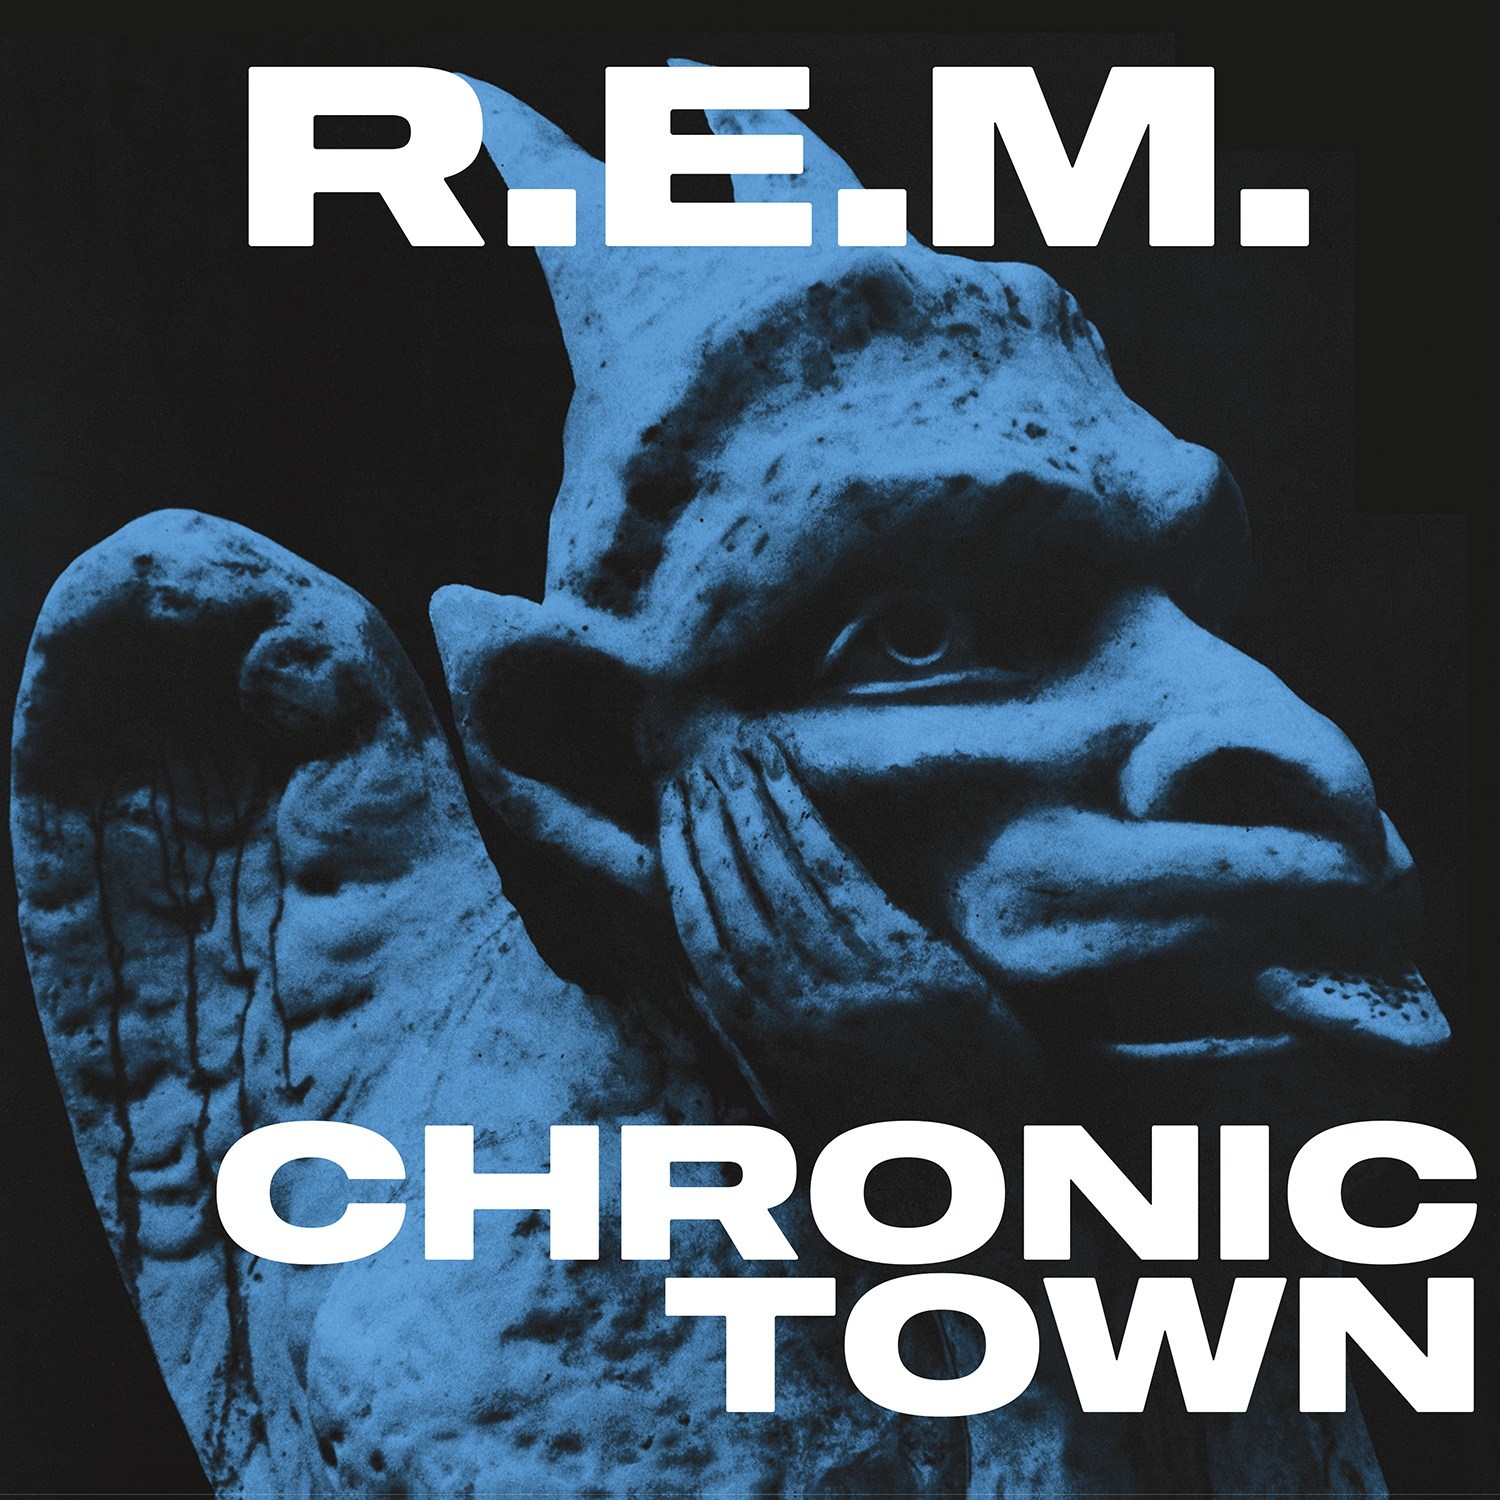 R.E.M. "Chronic Town"